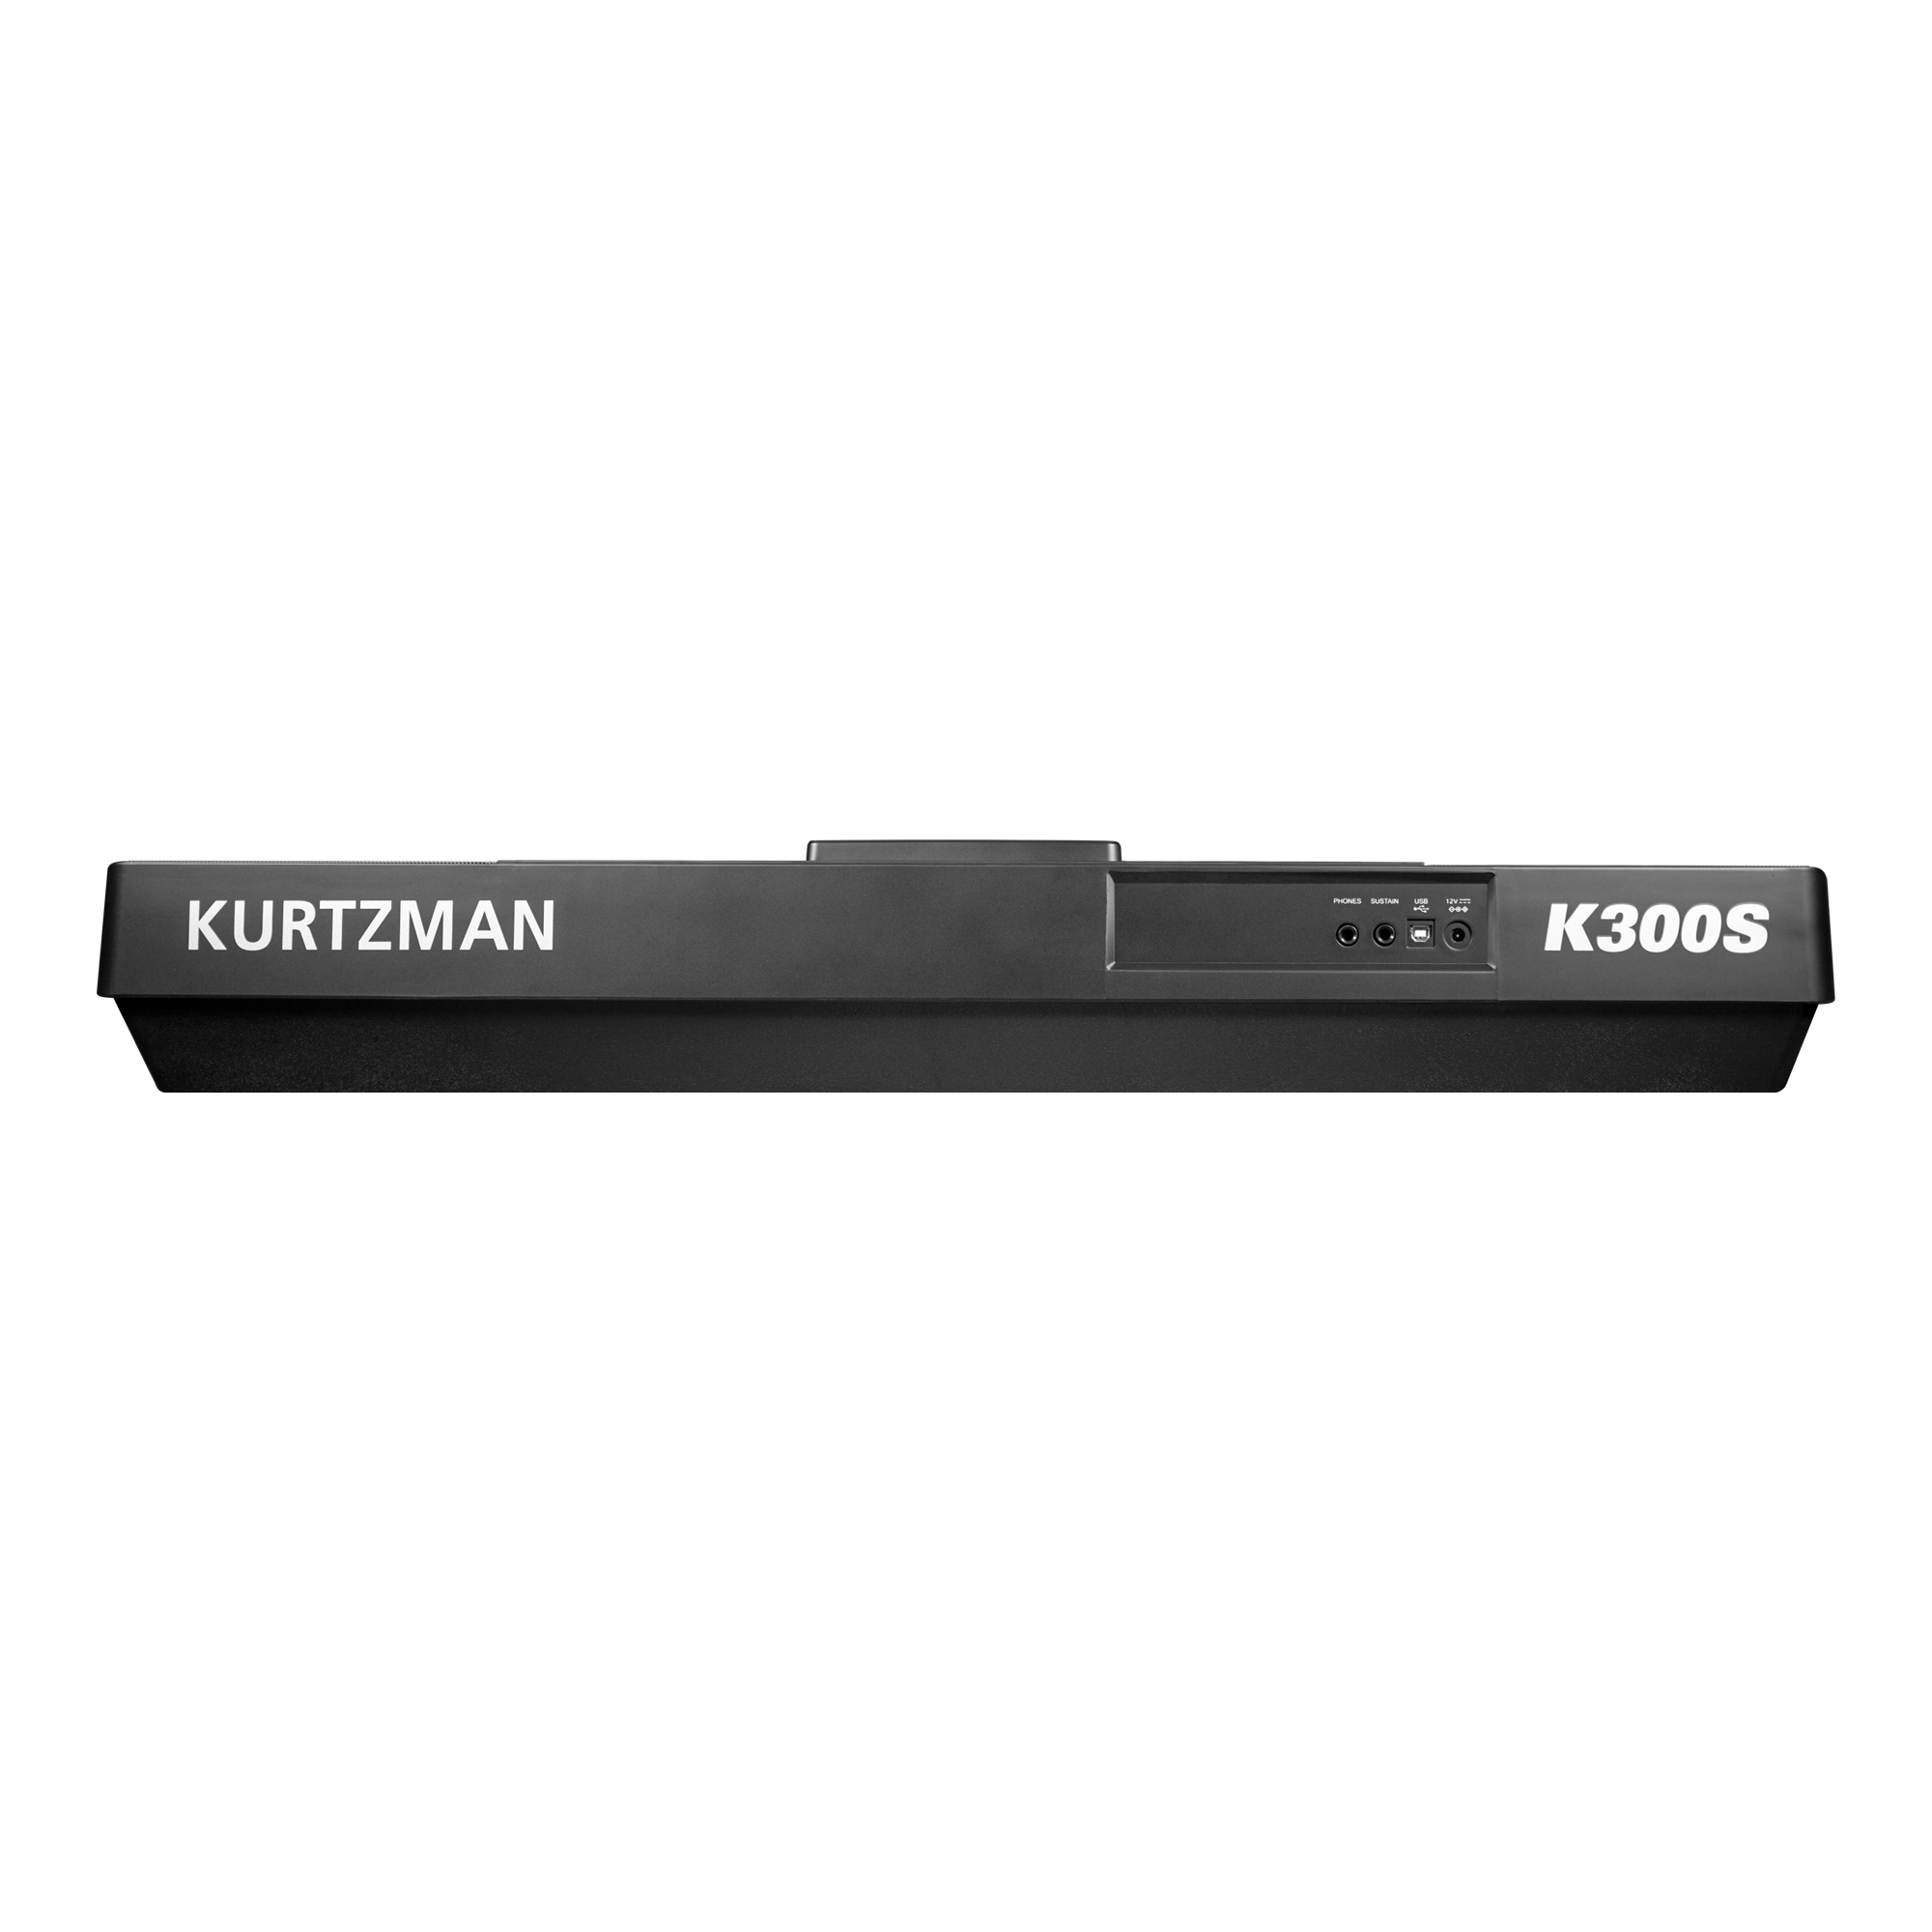 Đàn Organ điện tử, Portable Keyboard - Kzm Kurtzman K300S - Accompaniment Keyboard, Màu đen (BL) - Hàng chính hãng